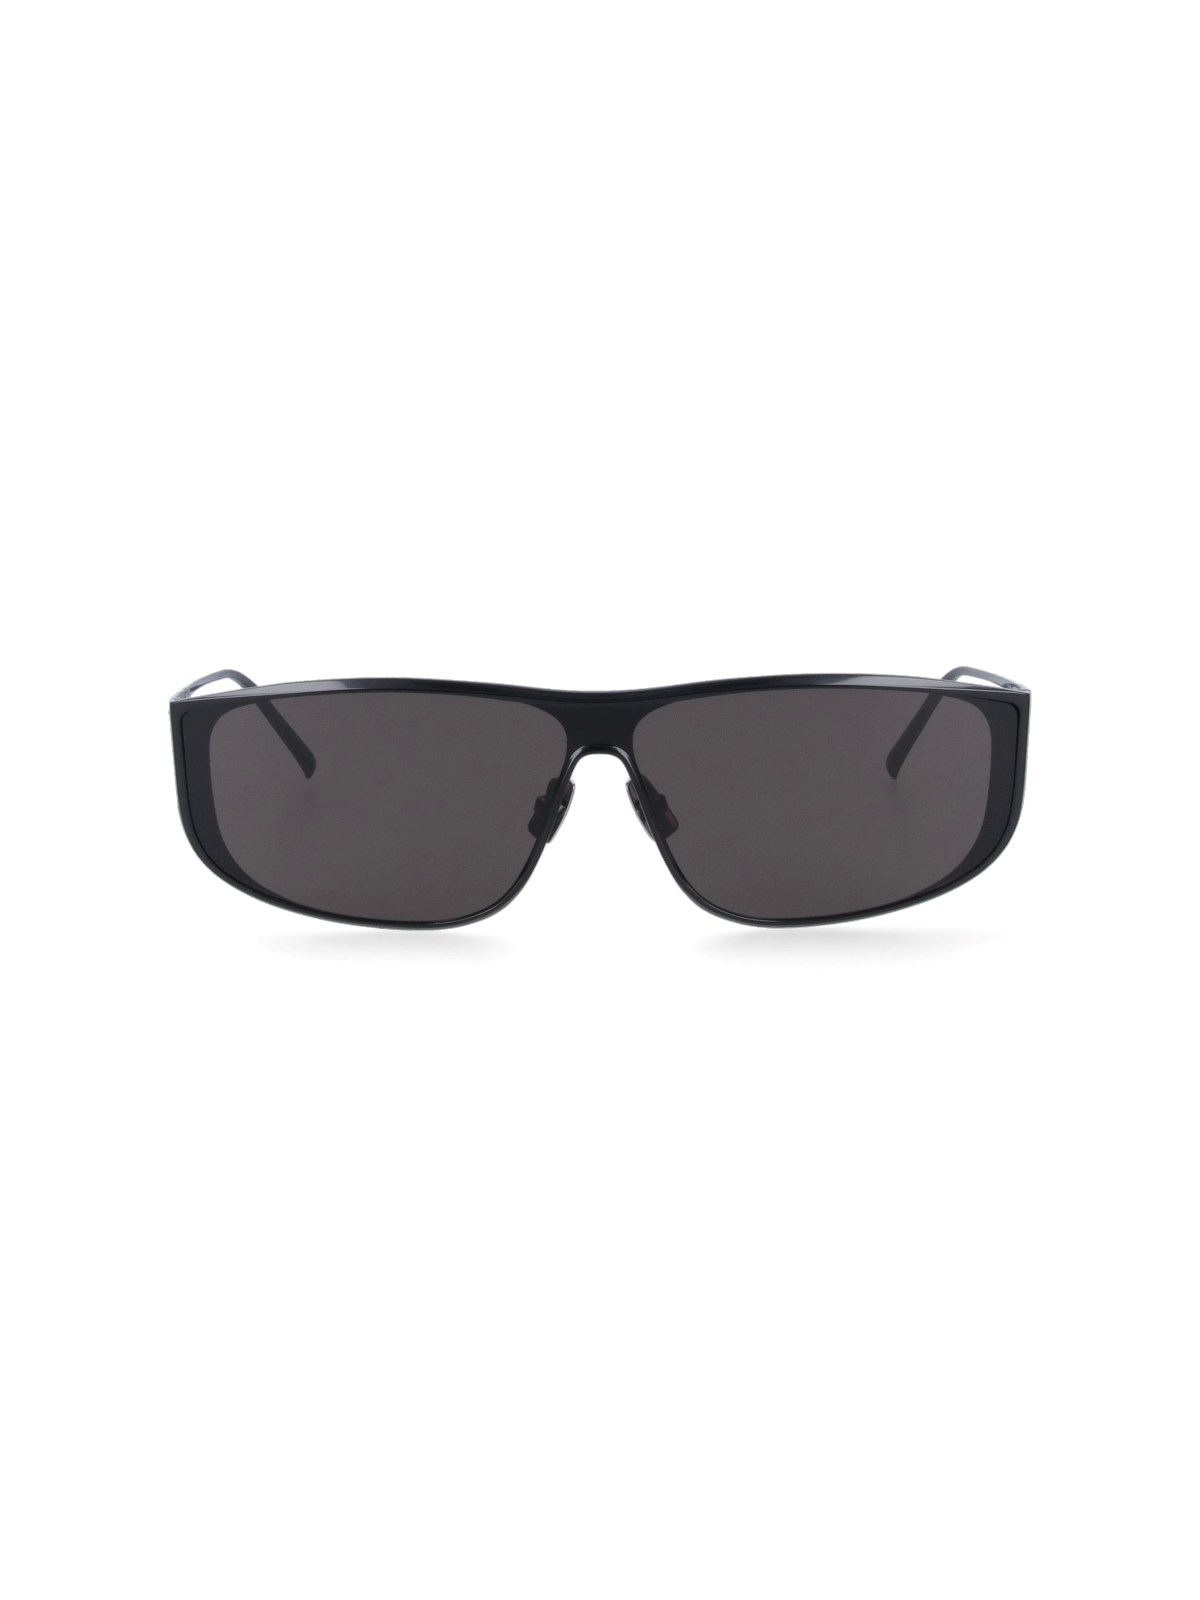 Saint Laurent '605 Luna' Sunglasses In Black  